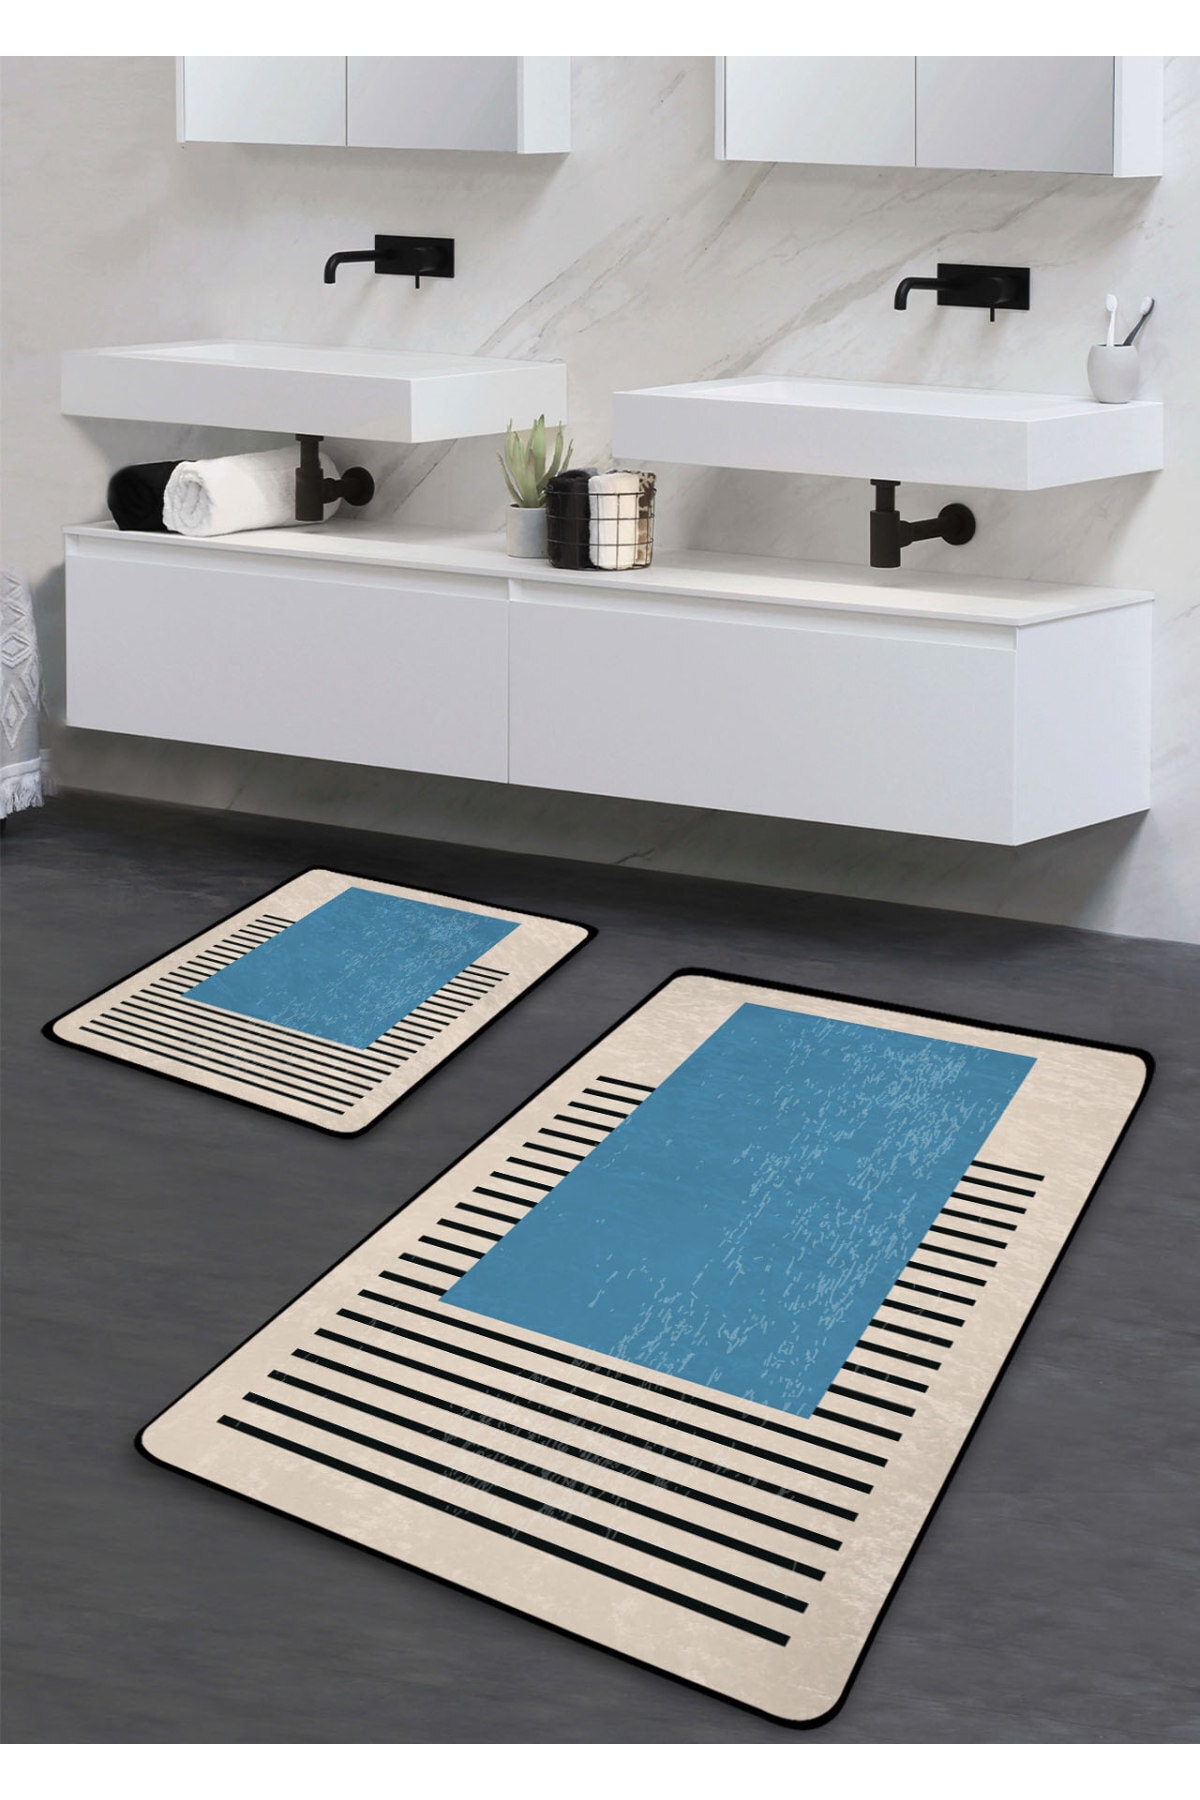 Pilloveland Kaymaz Taban Yıkanabilir 2’li Banyo Paspası - Mavi Tablo Desenli 60*100 Cm - 50*60 Cm